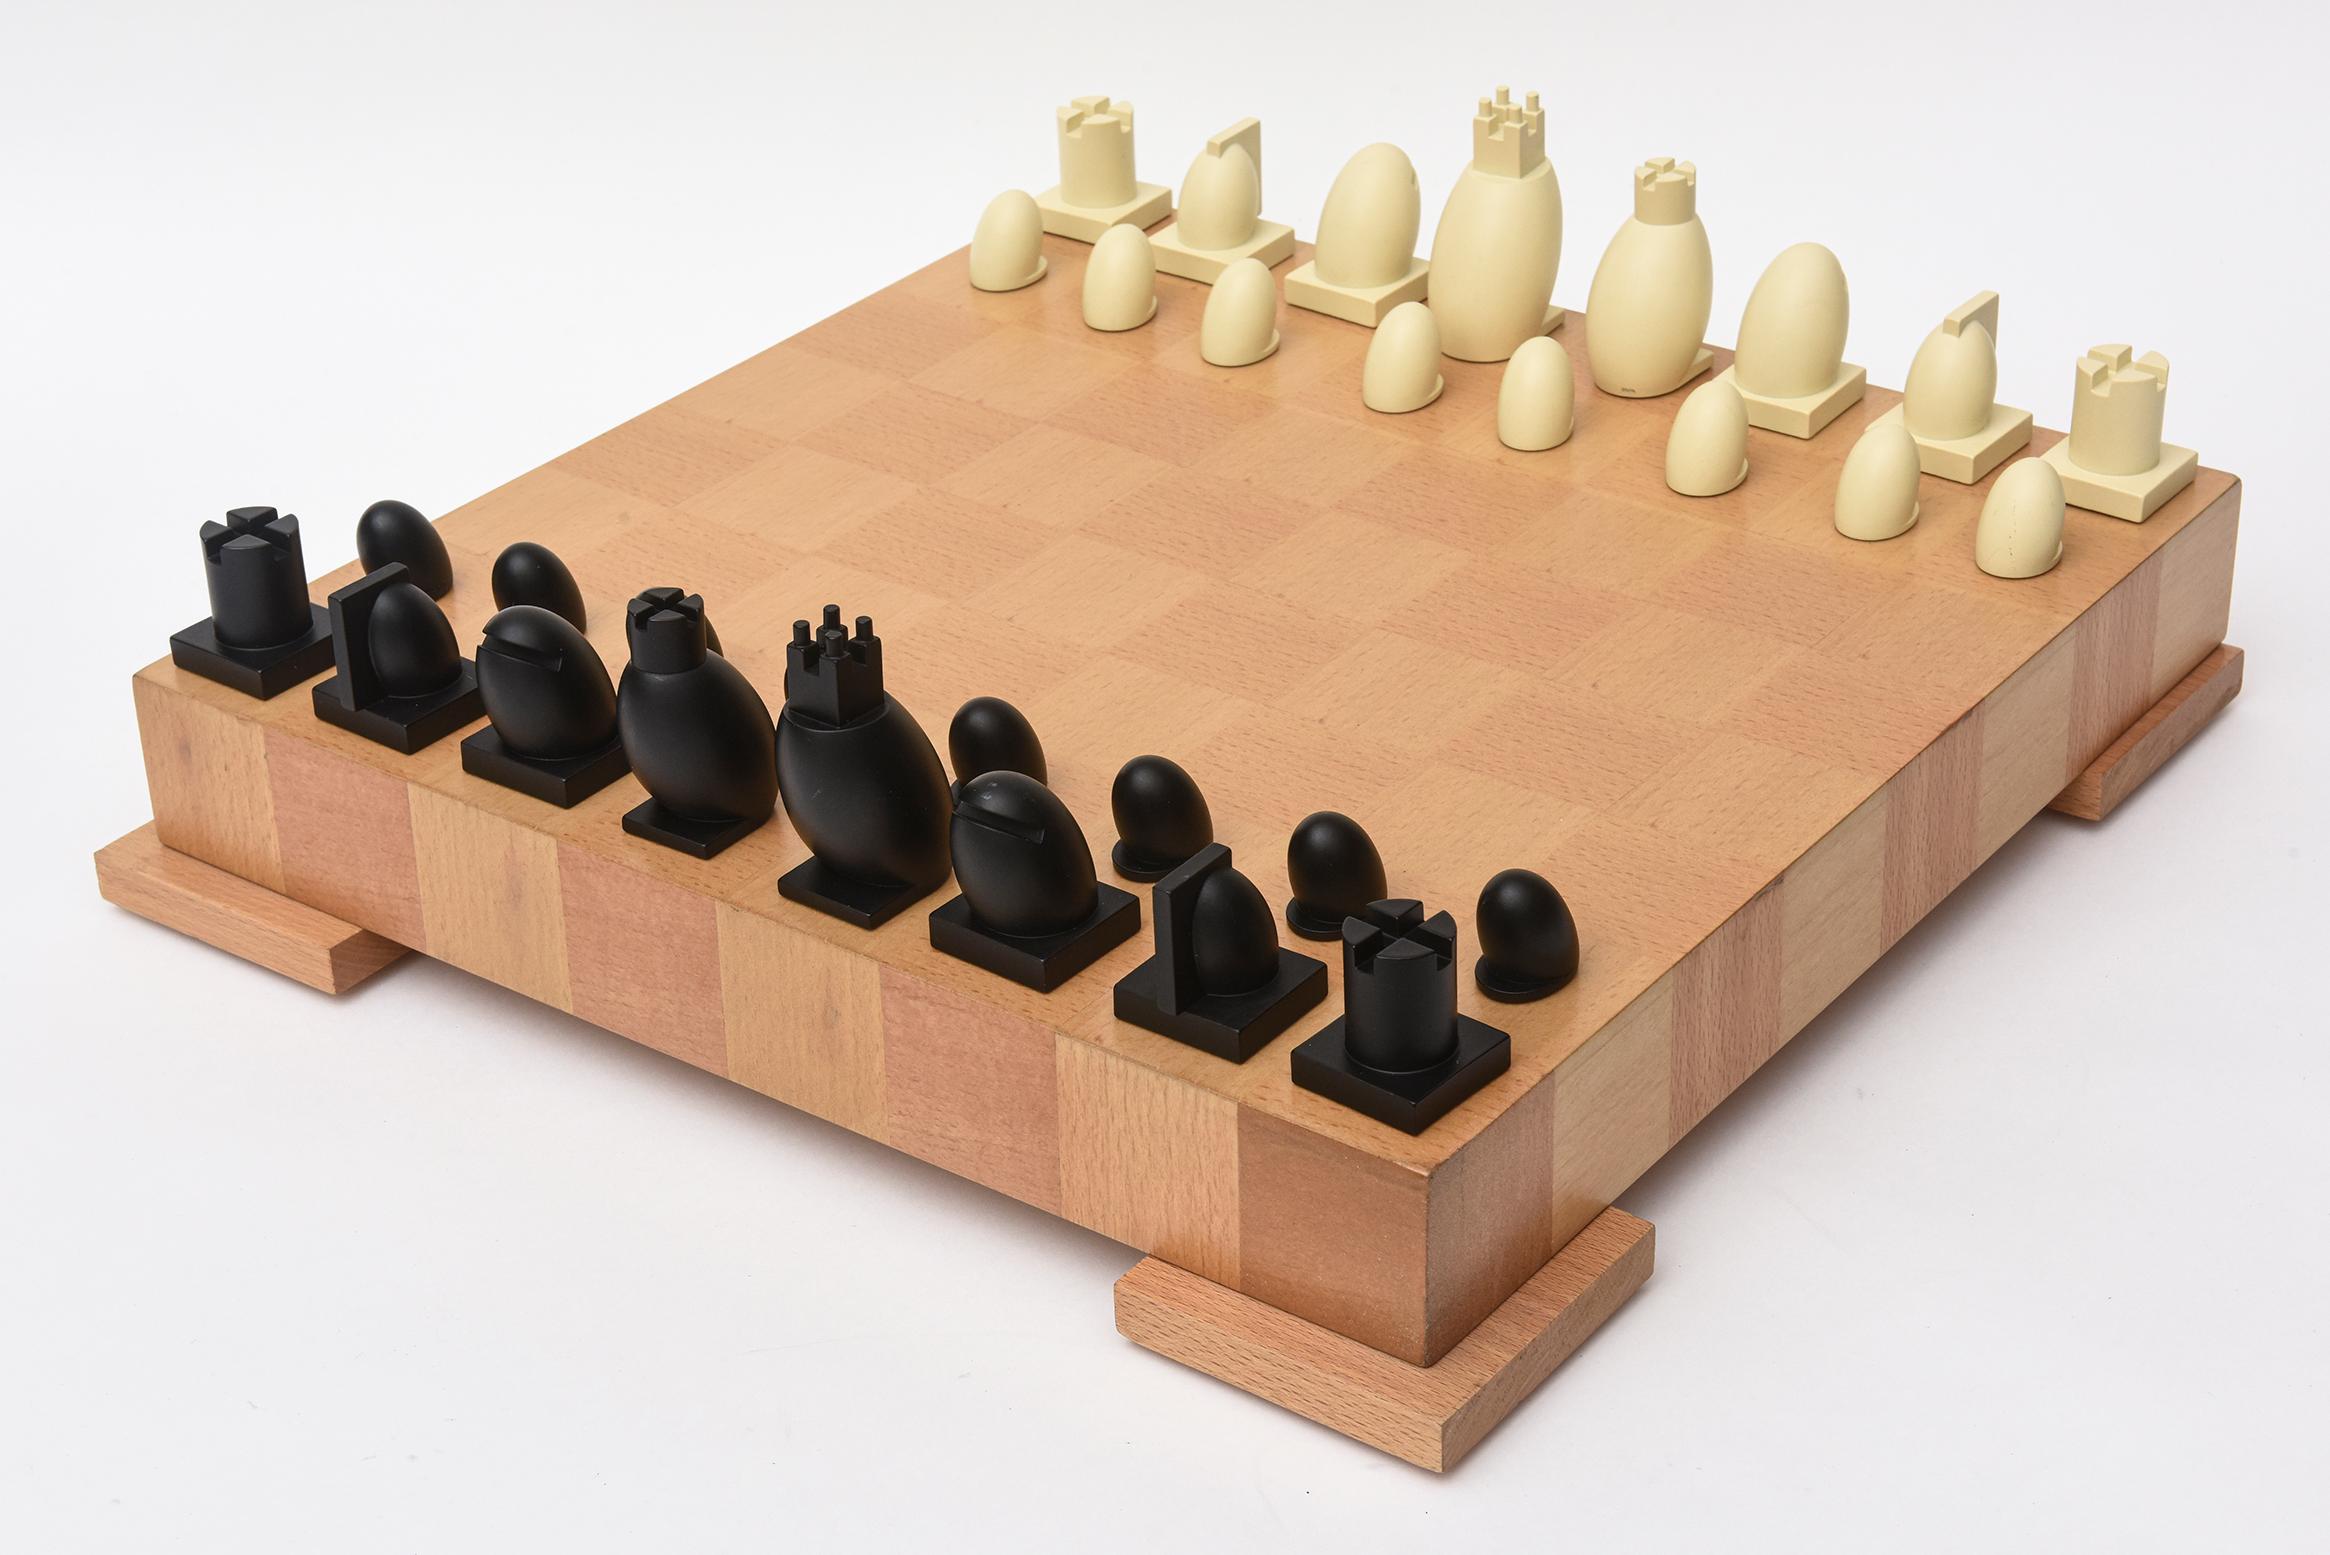 Diese ursprüngliche Postmodern Michael Graves Schachspiel mit Damespielfiguren wurde vollständig mit dem Holz, die 2 Varianten von Ahorn ist restauriert. 
Das Holz wurde erneuert und der Boden mit neuem Filz versehen. Die Harzspieler sind eine